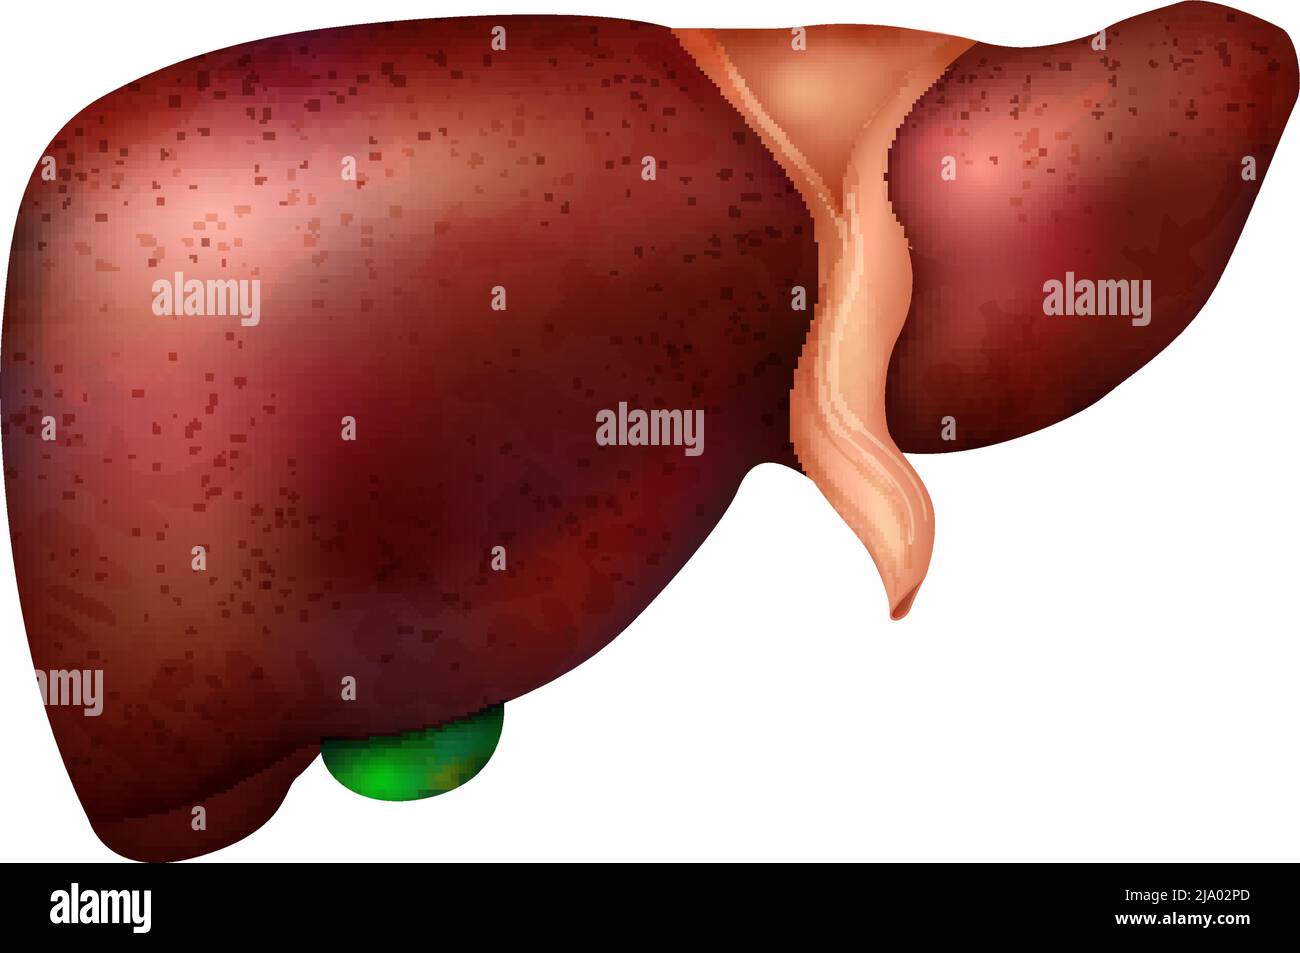 Realistische Zusammensetzung der Anatomie der menschlichen inneren Organe mit isolierter Darstellung des Lebervektors Stock Vektor